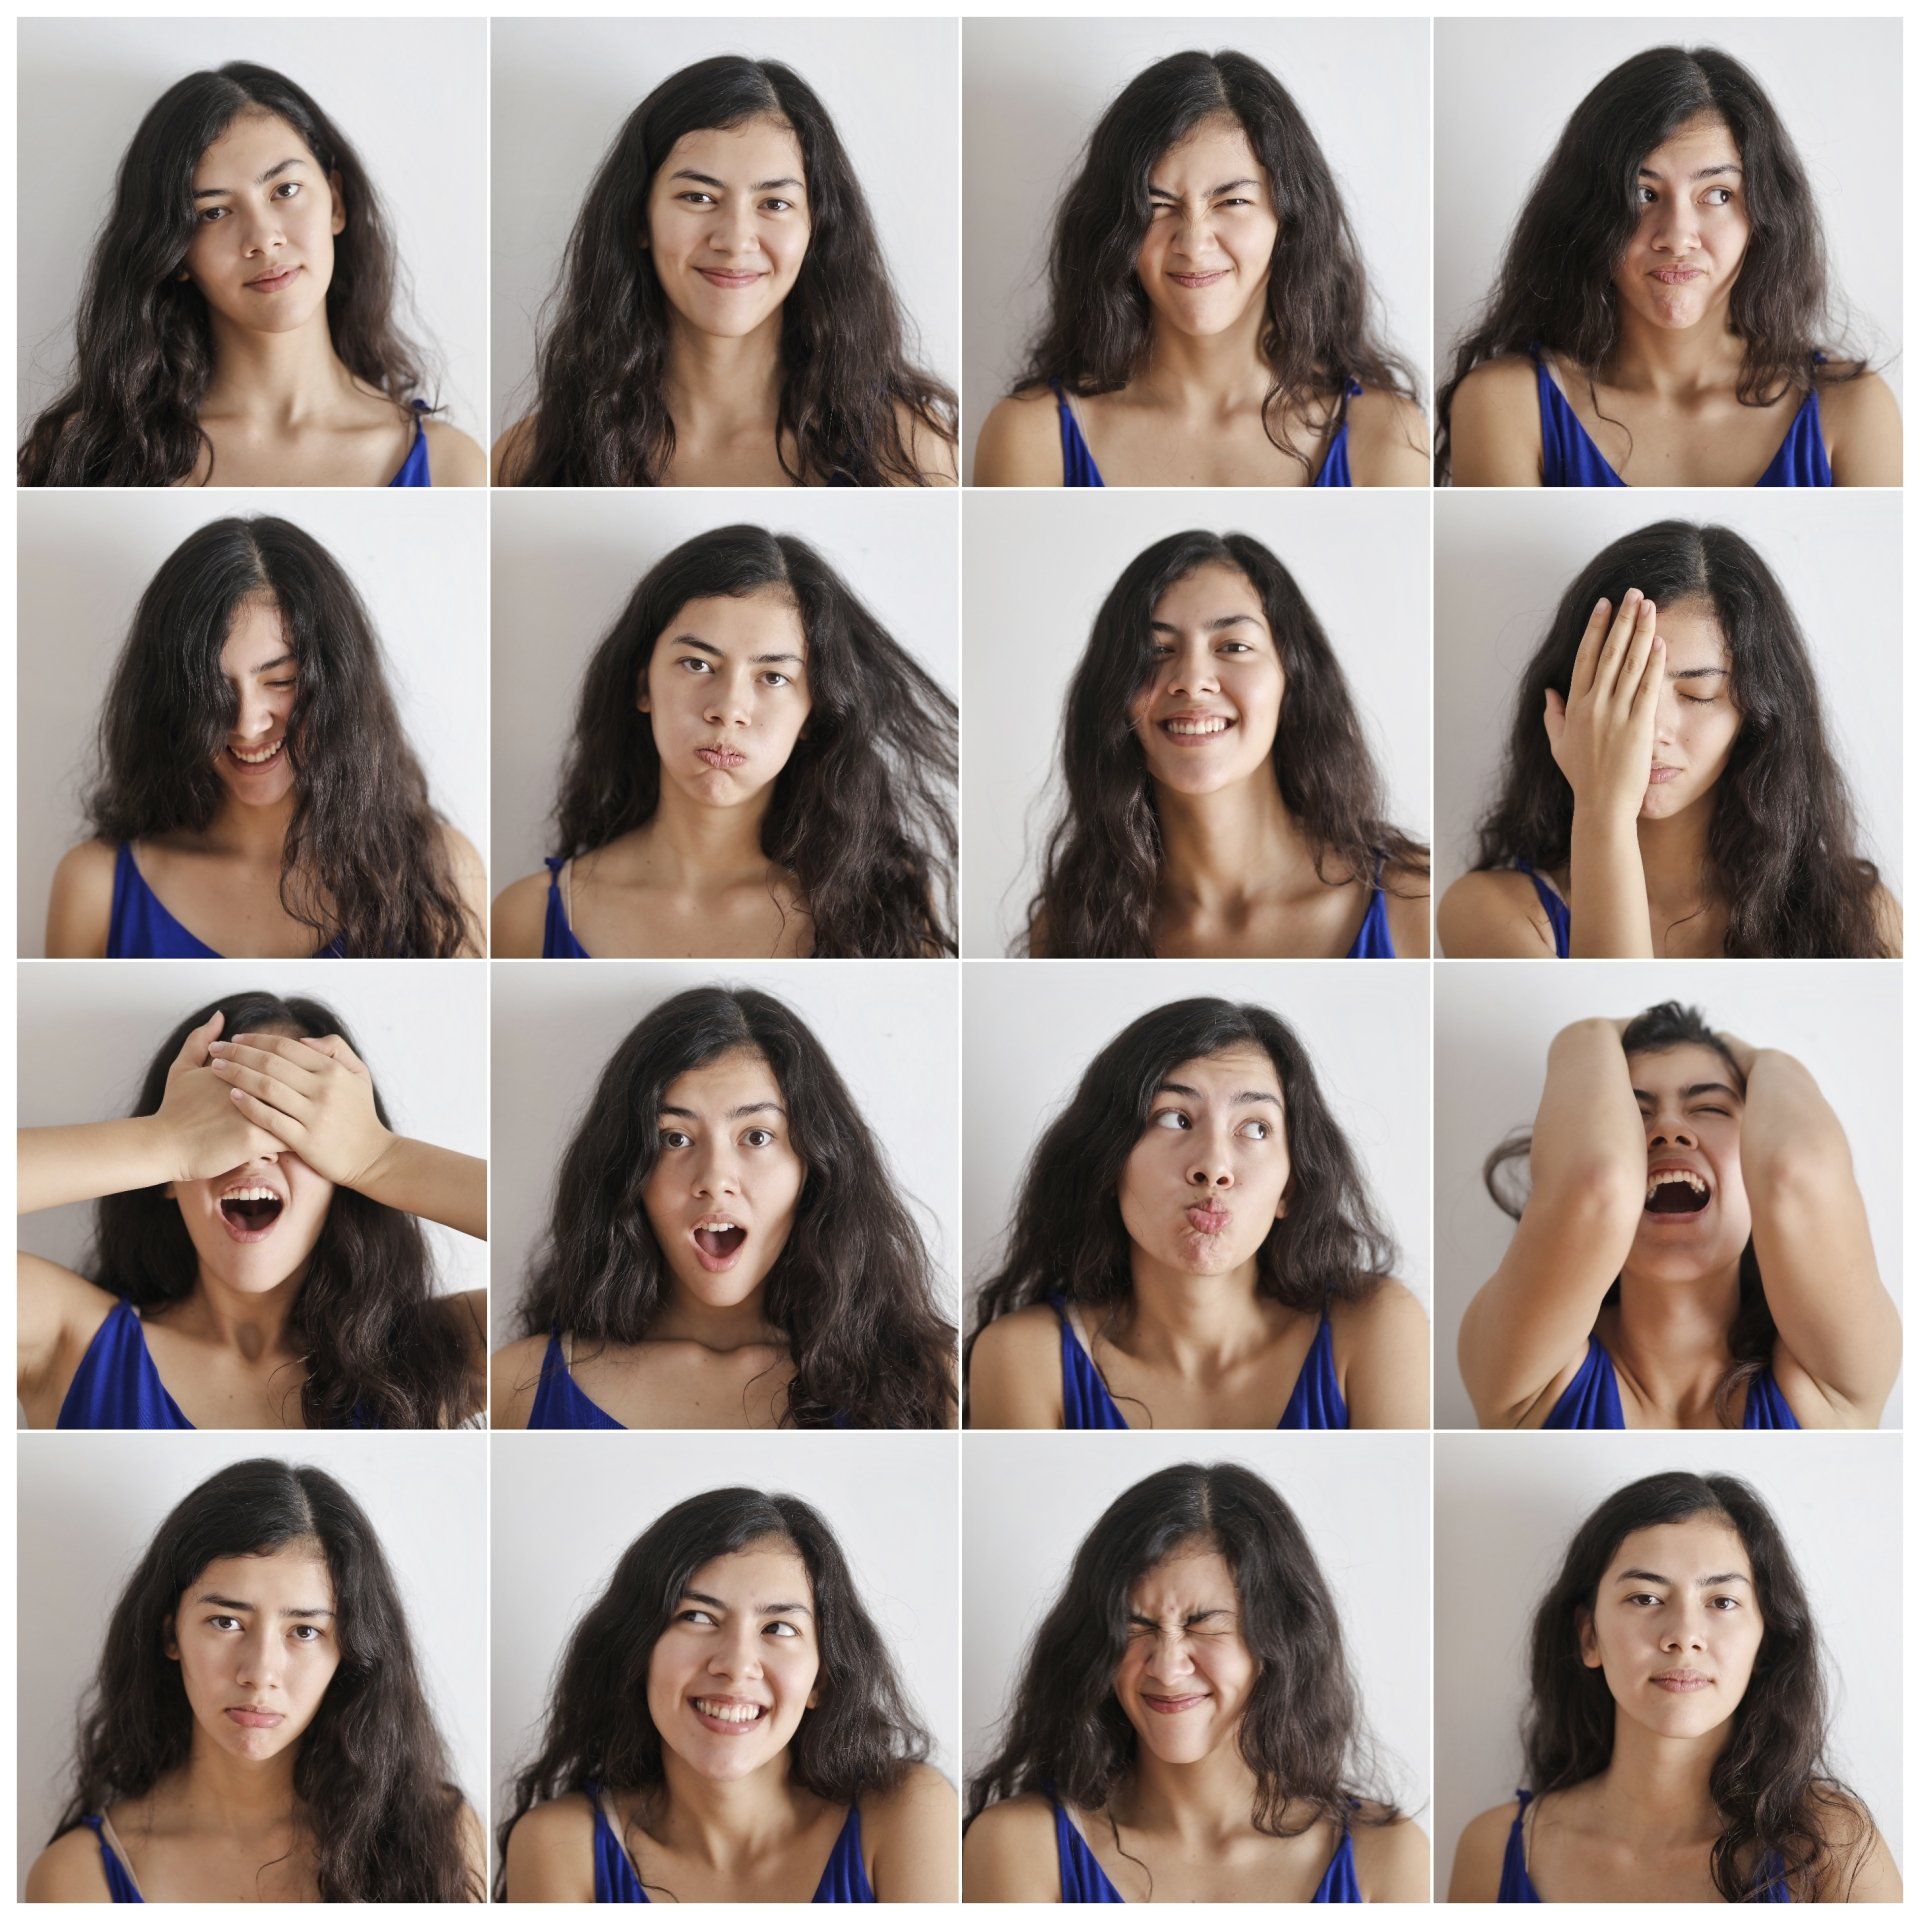 un collage di foto di una donna con diverse espressioni facciali .